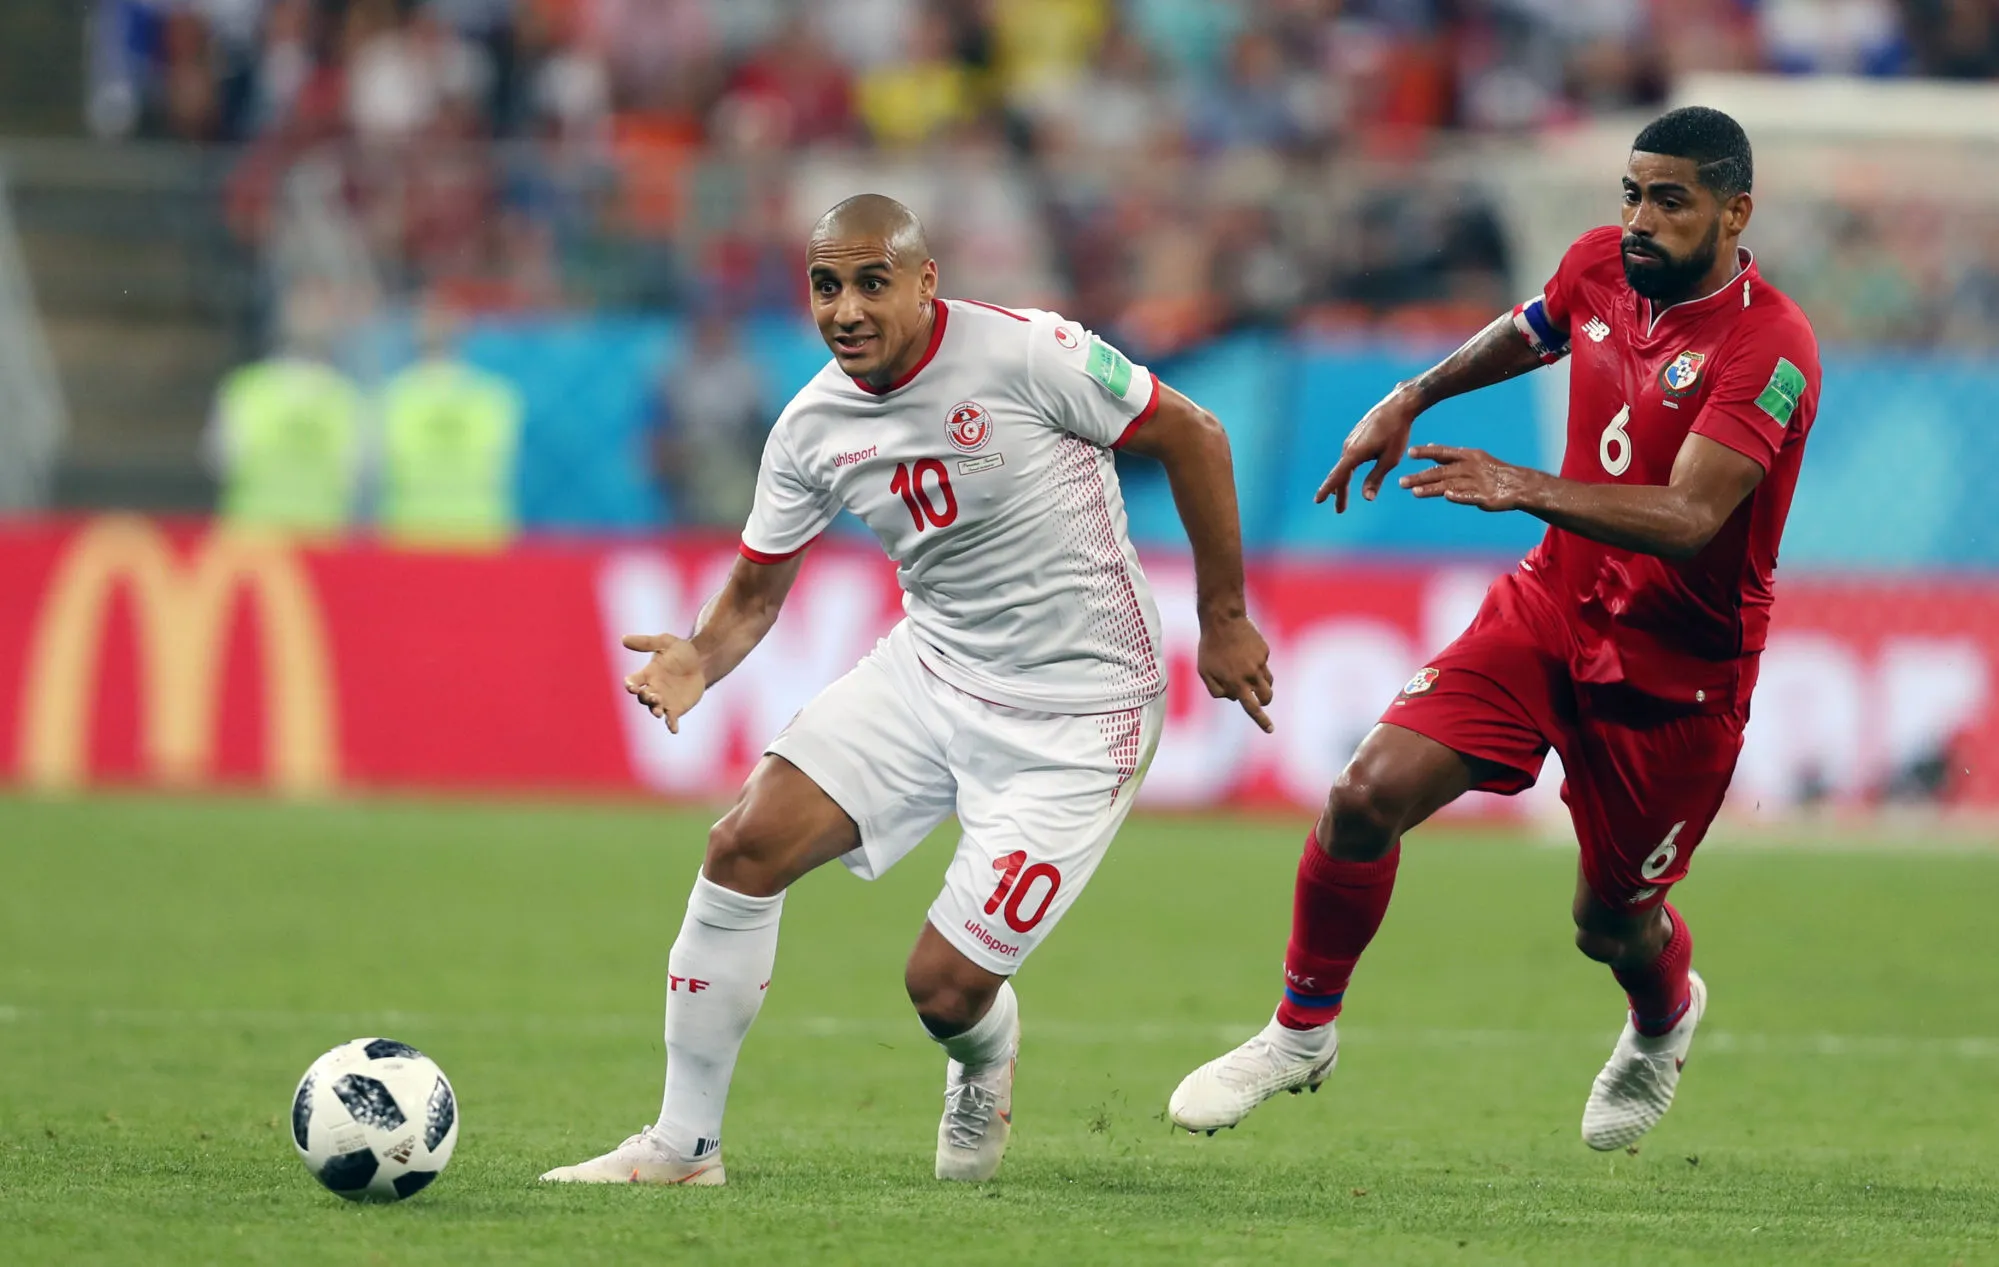 Pronostic Tunisie Mali : Analyse, prono et cotes du match de la CAN 2019